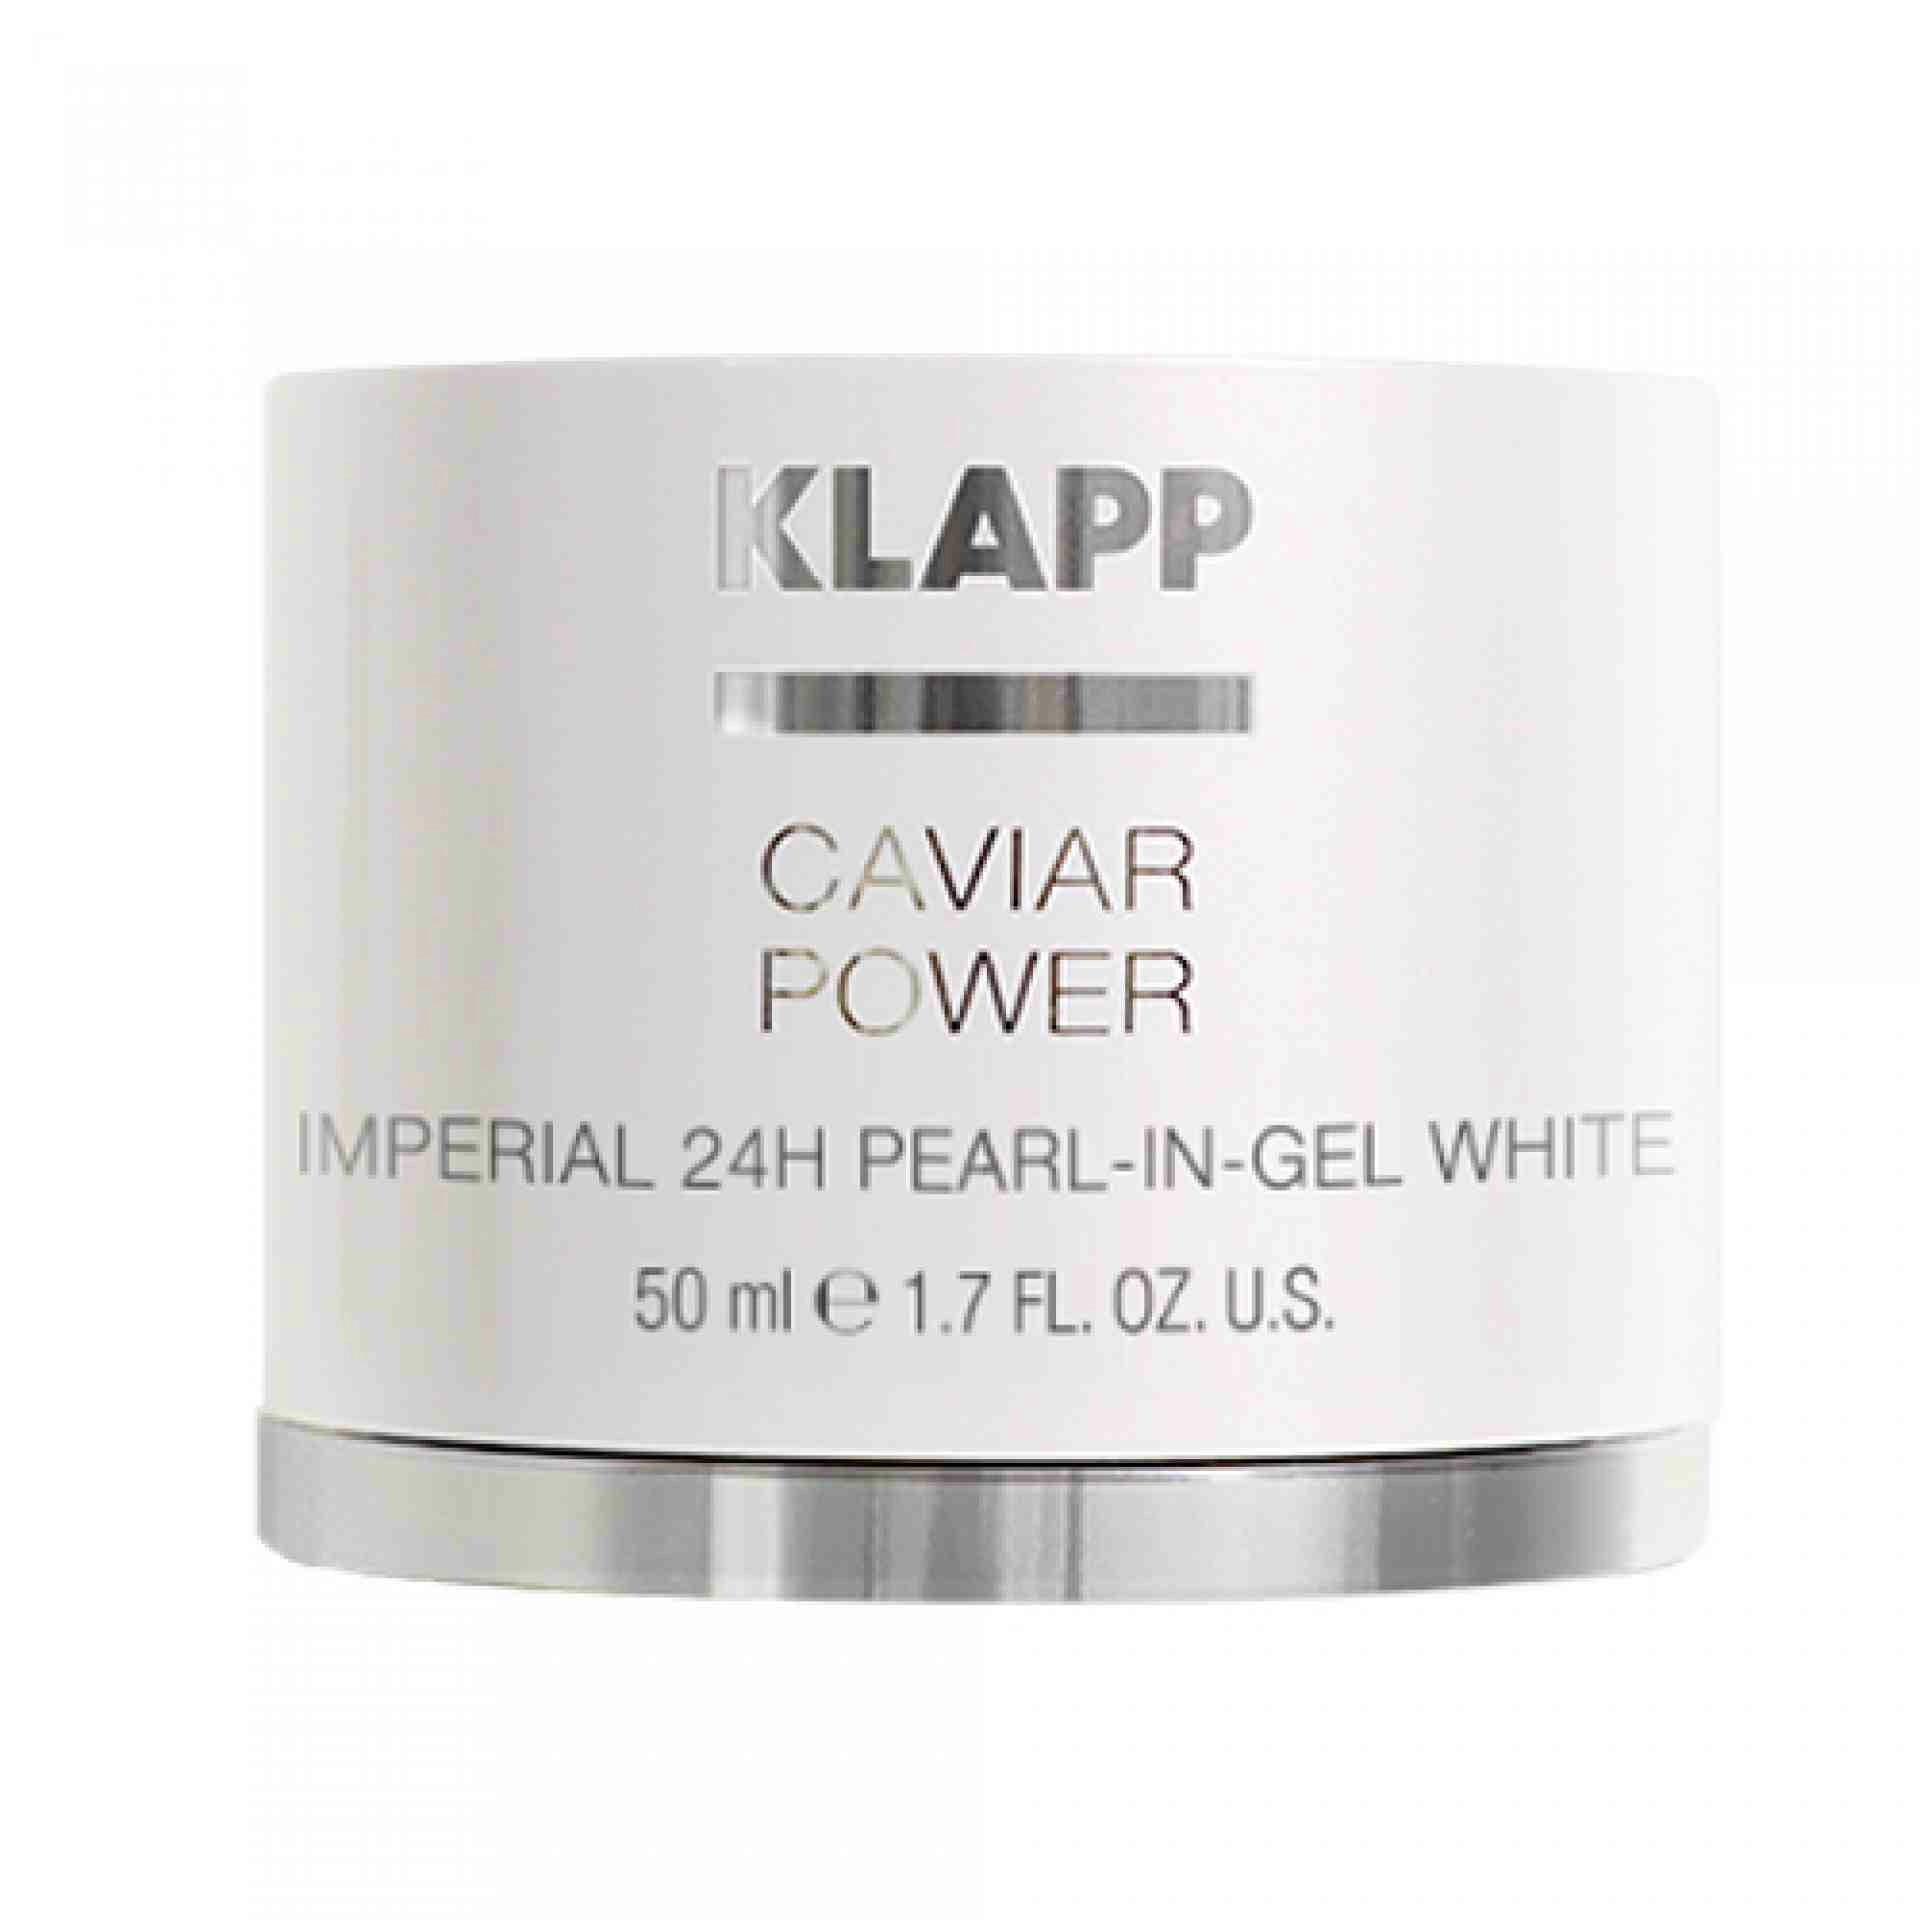 Imperial 24H Pearl-in-Gel White 50ml | Gel 24 Horas - Caviar Power - Klapp ®